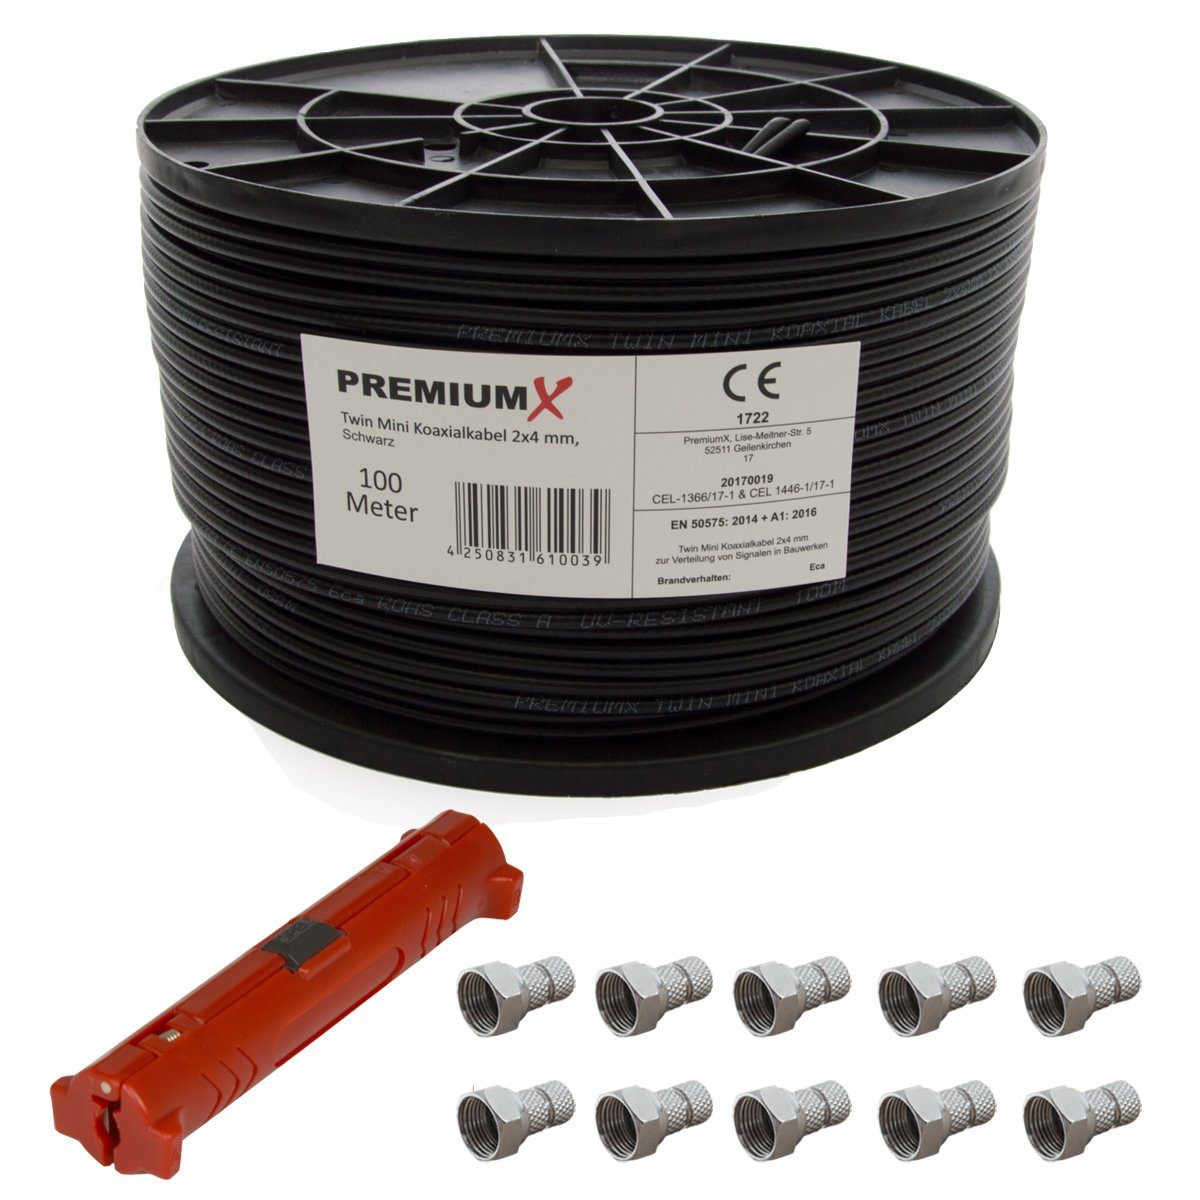 PremiumX 100 Meter Sat Kabel 90dB Twin Mini 2x 4 mm Schwarz +  Abisolierwerkzeug SAT-Kabel